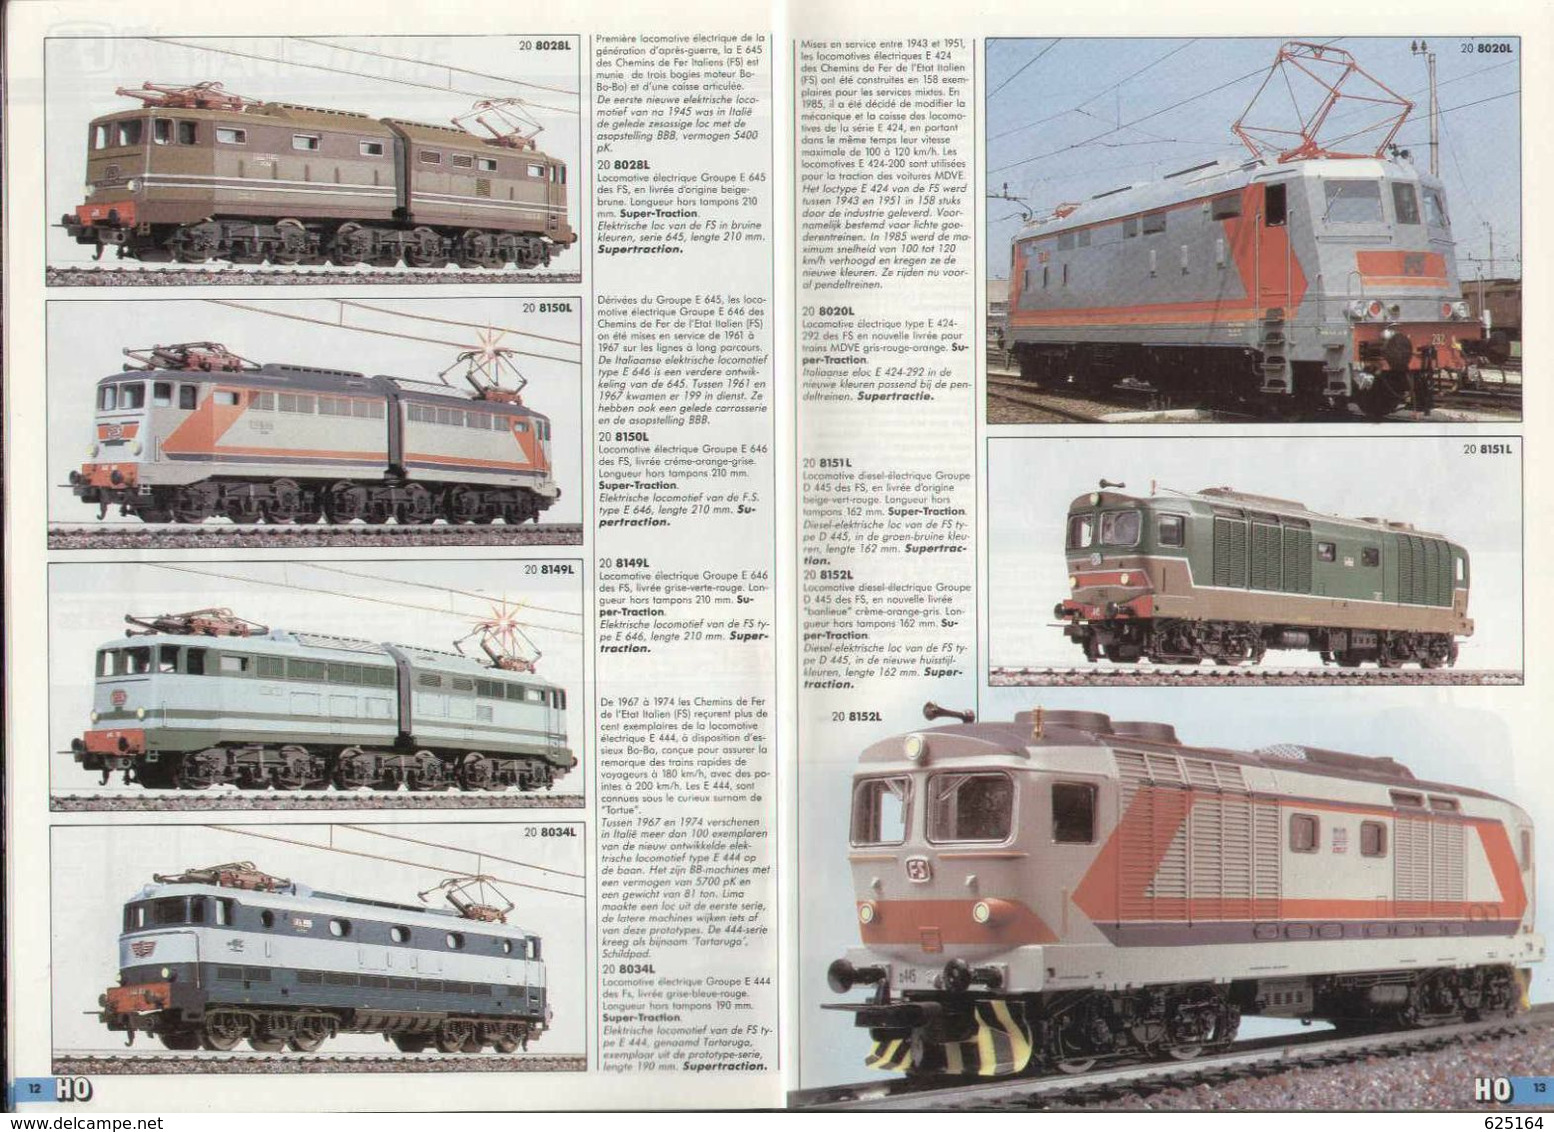 Catalogue LIMA 1988/89 Treinen Schaal HO/N - Chemins De Fer échelle HO/N - En Néerlandais Et En Français - Dutch